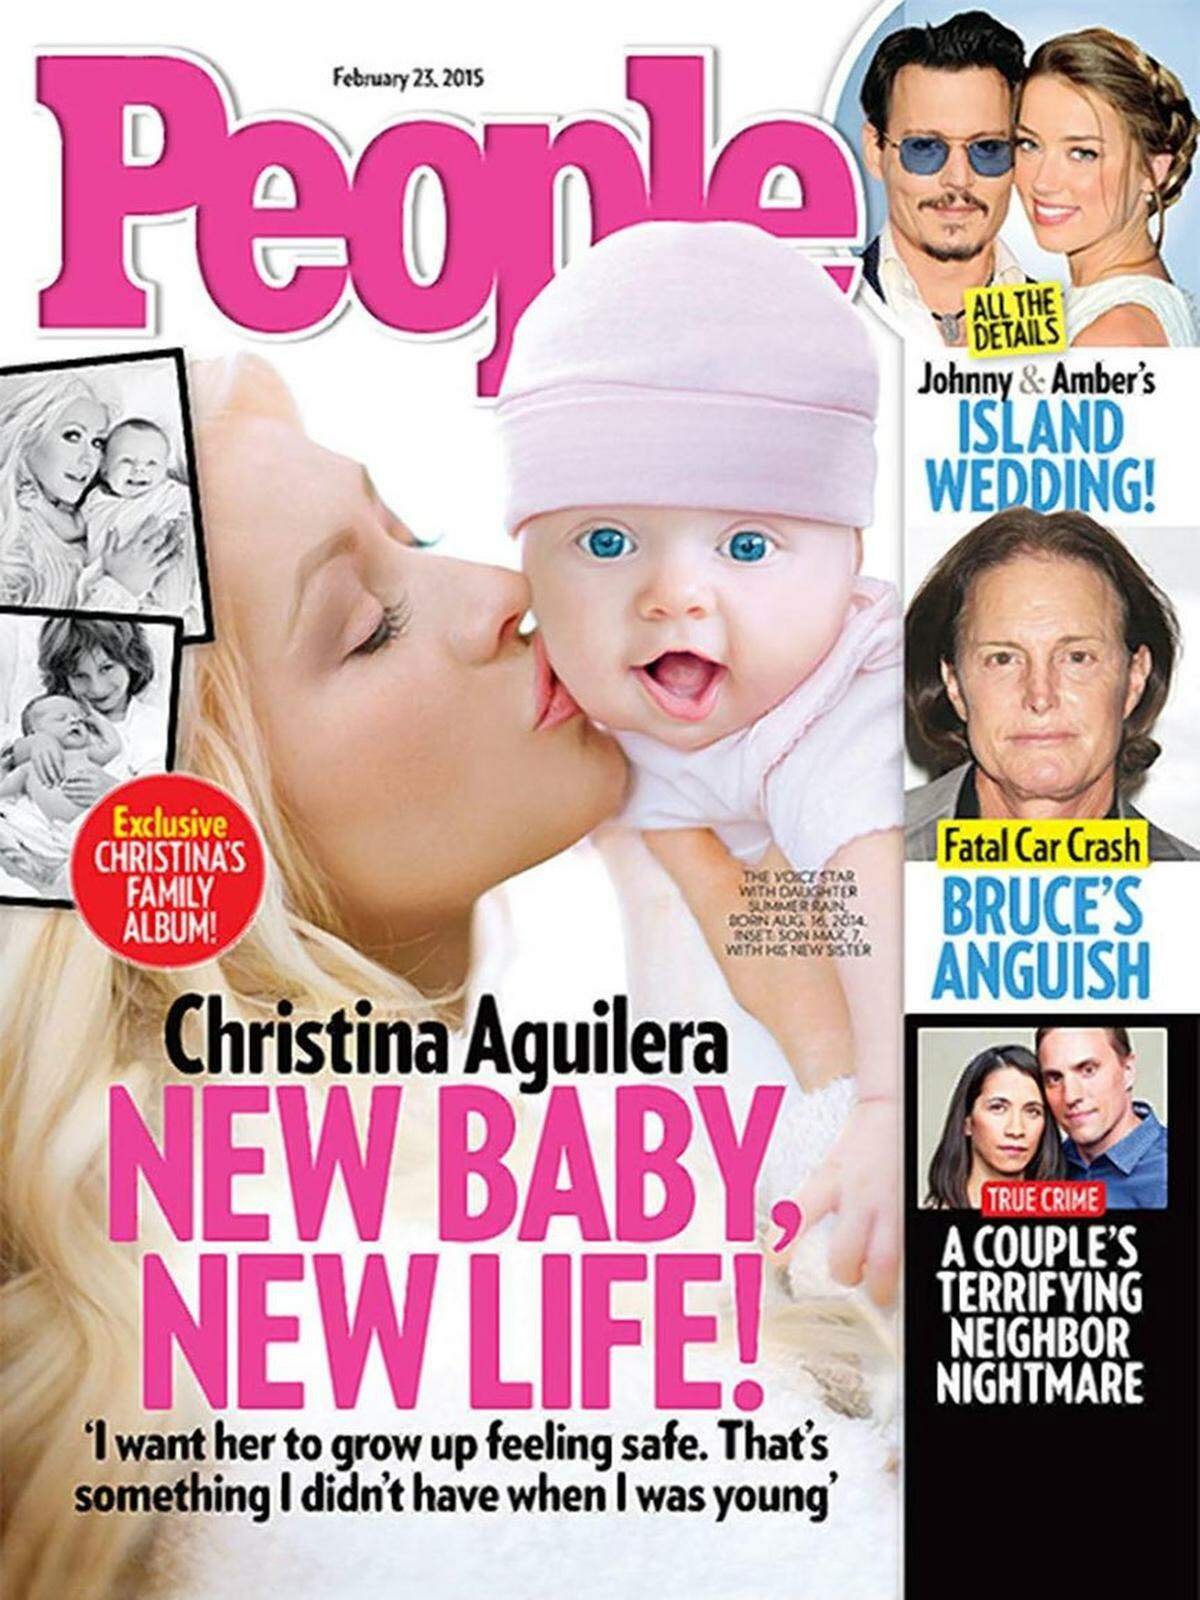 Die zweifache Mutter Christina Aguilera führte ihre Tochter Summer Rain auf einem Cover des "People Magazines" in die Gesellschaft ein. Die Kleine kam bereits am 16. August 2014 zur Welt.